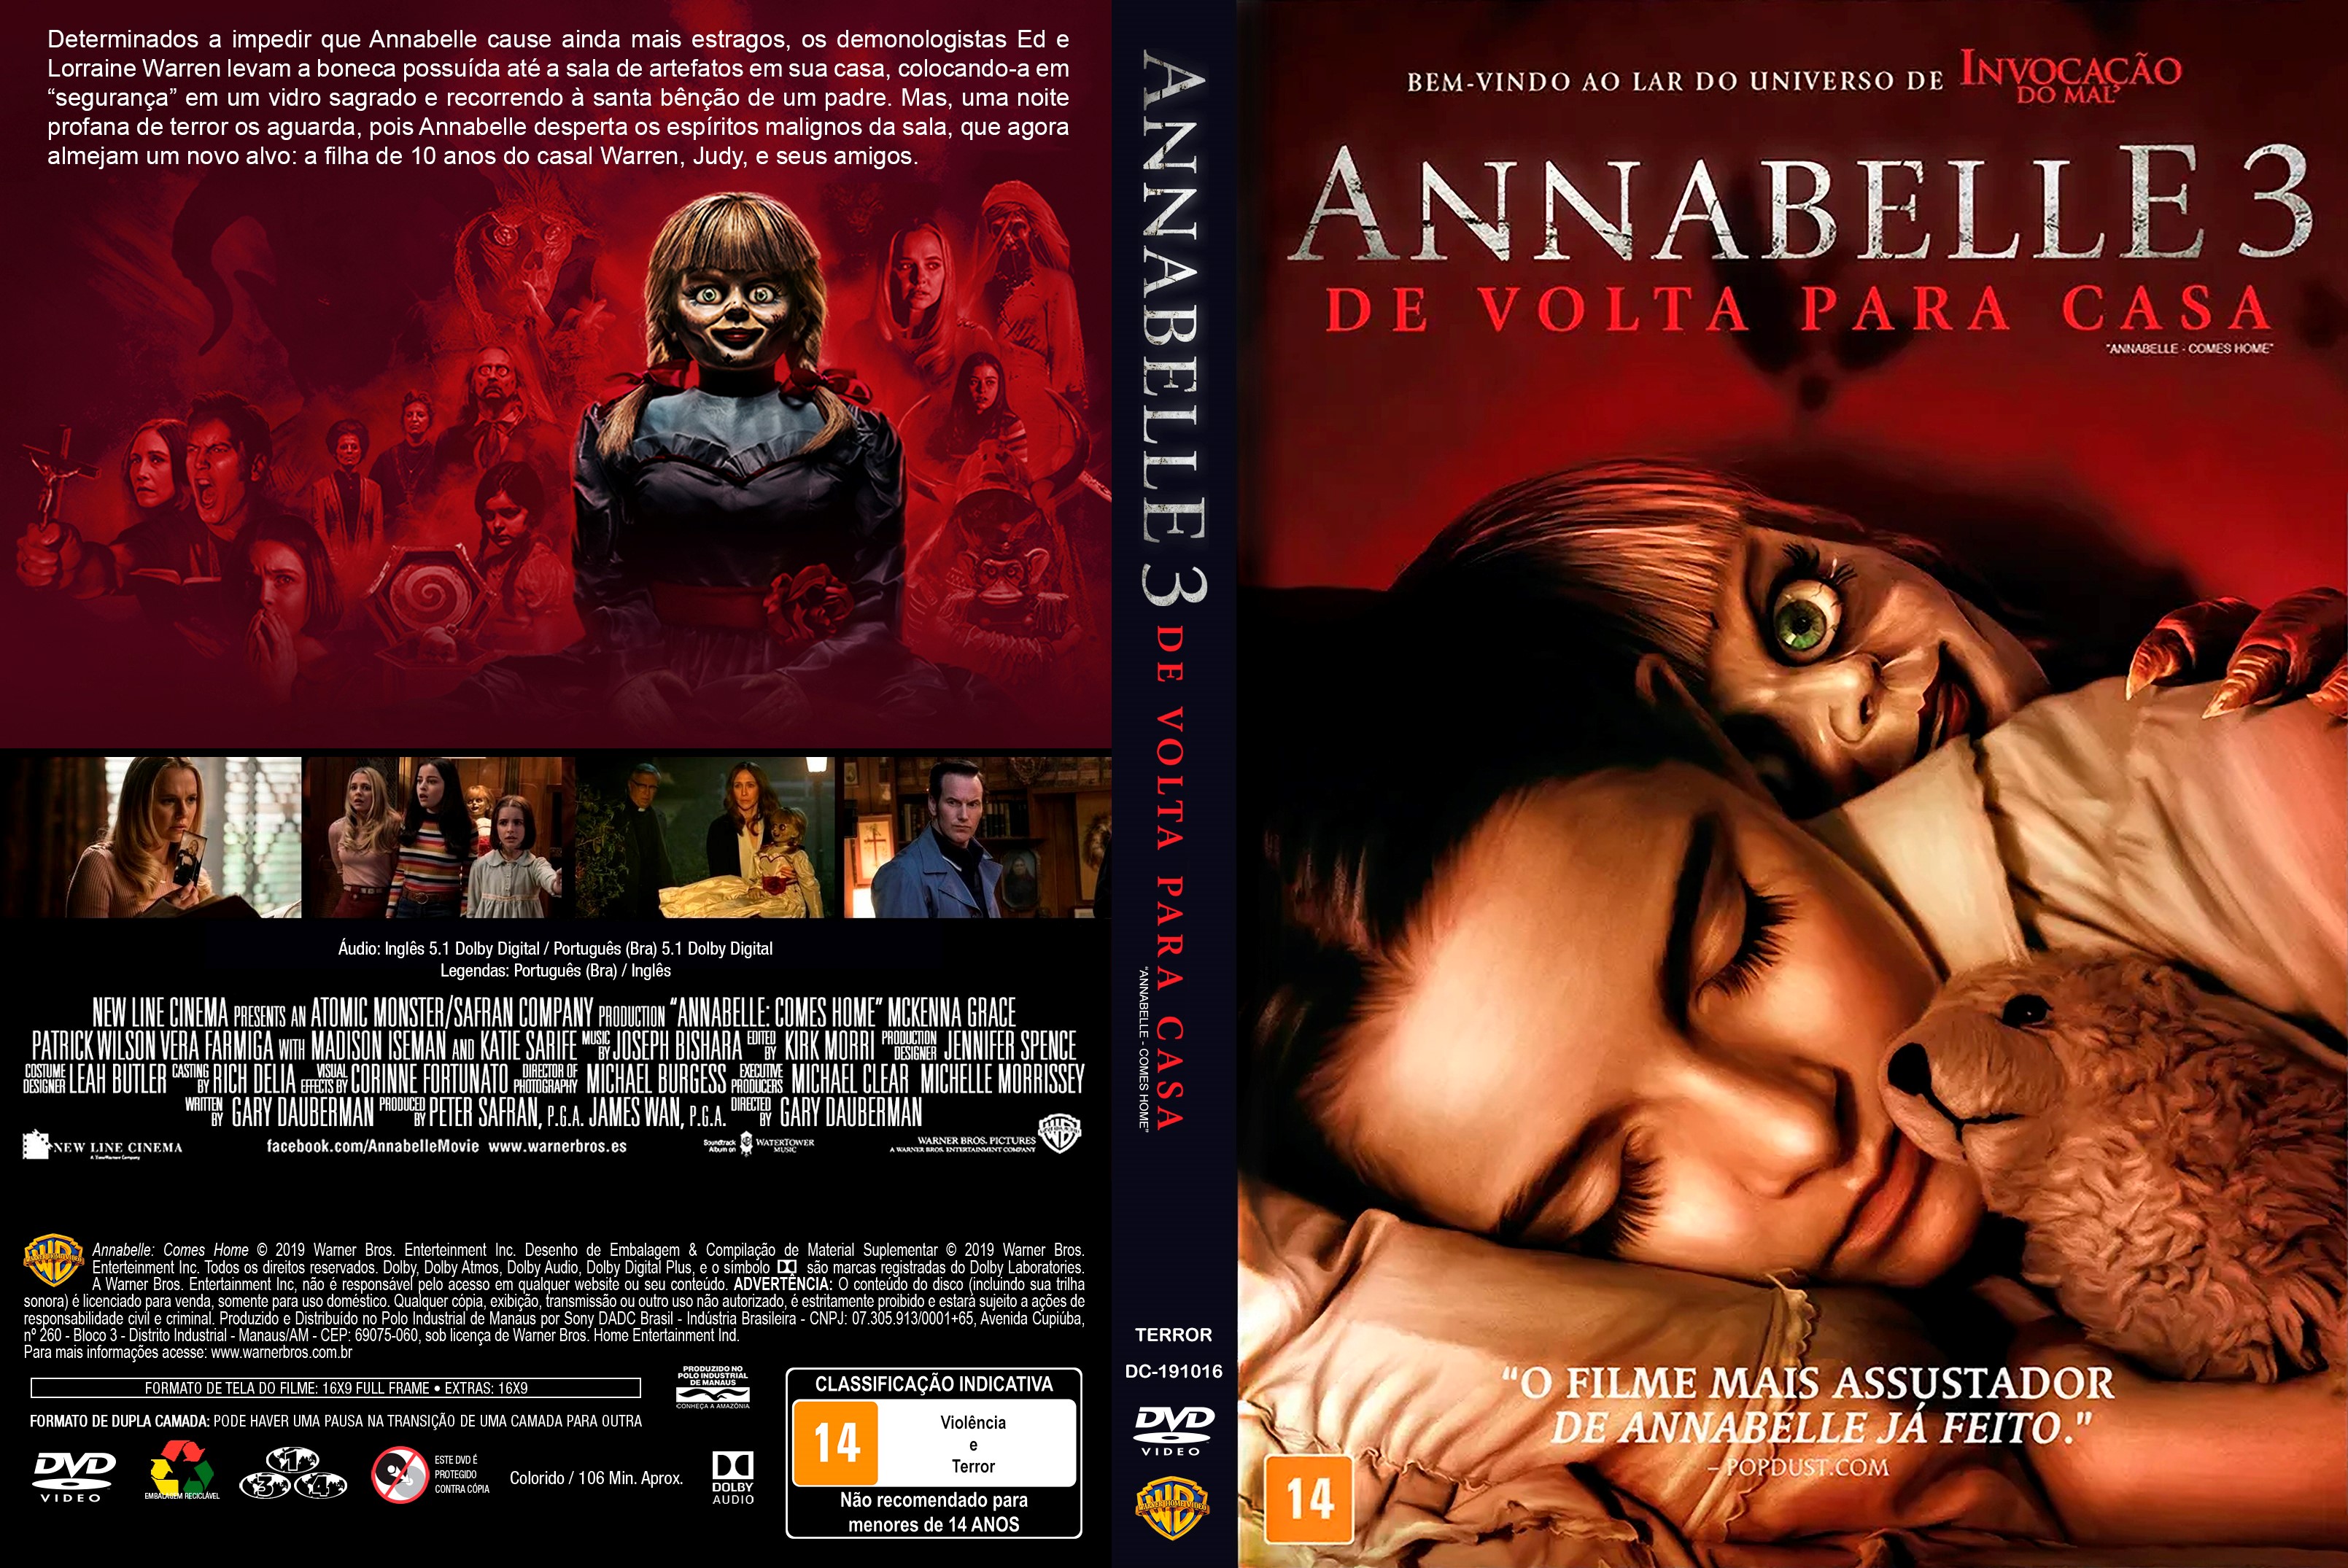 Boneca Annabelle 3 Filme De Volta Para Casa